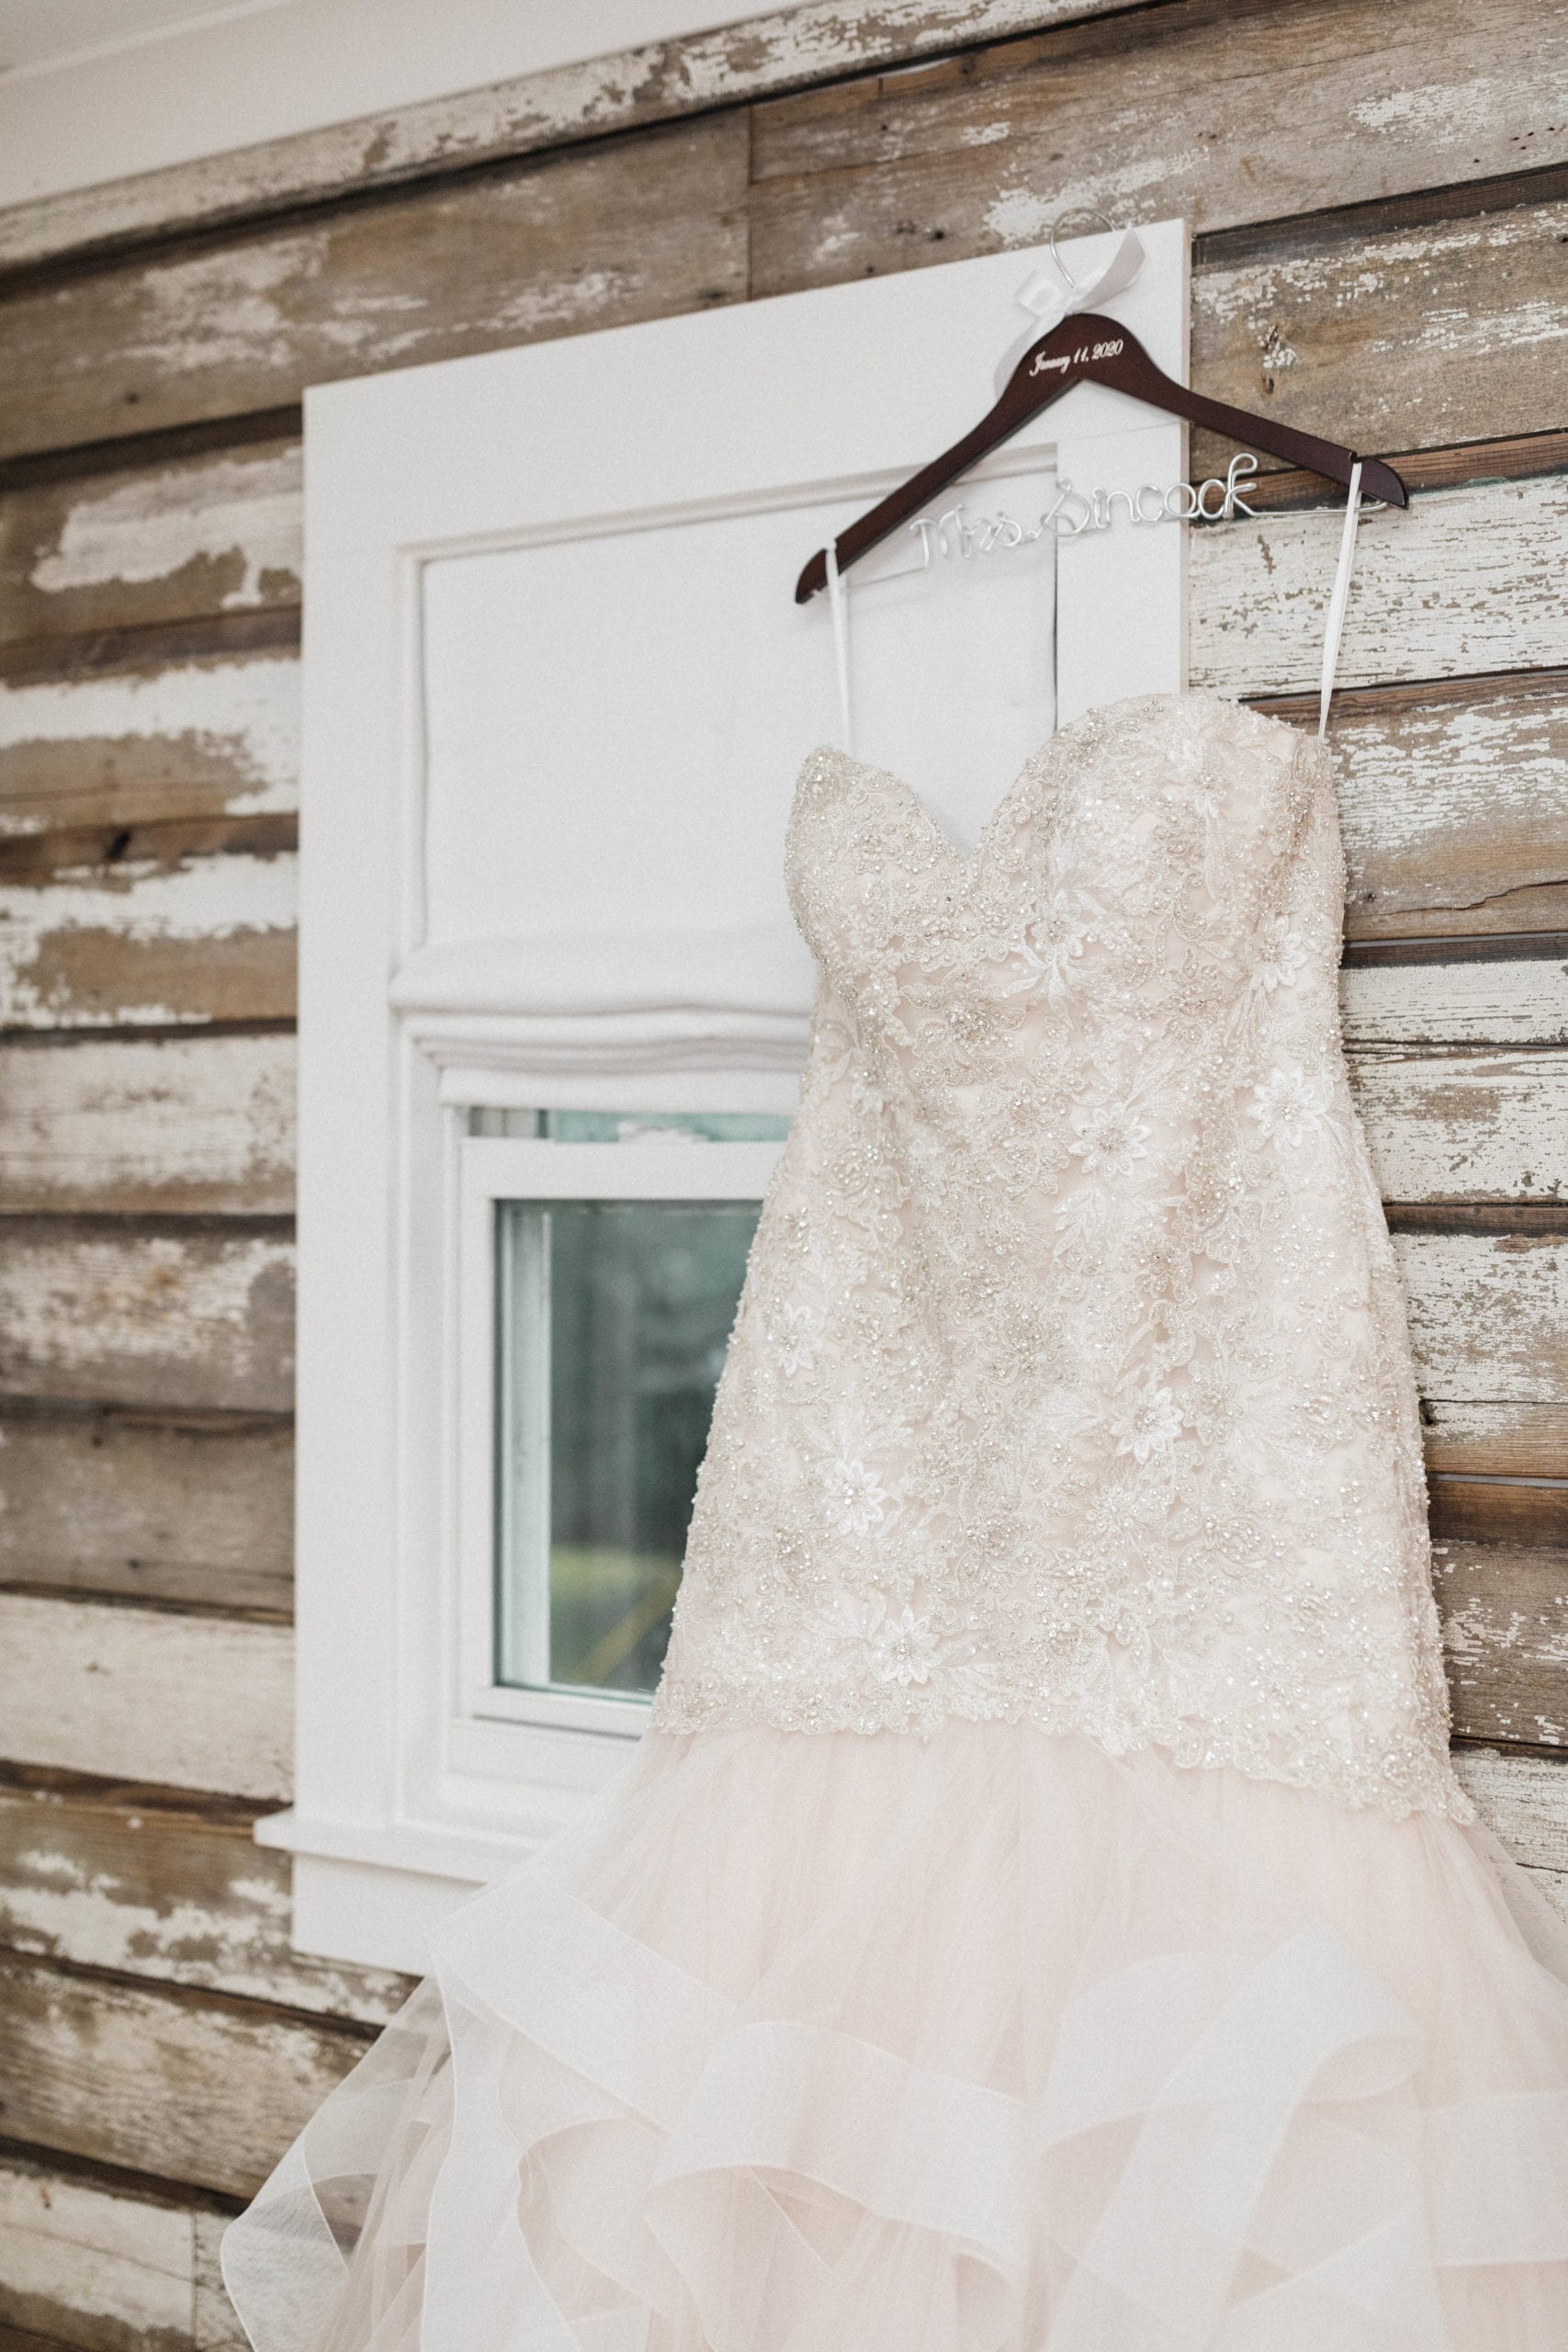 Wedding Dress on wooden hanger The Roost Ocean Springs Bridal suite